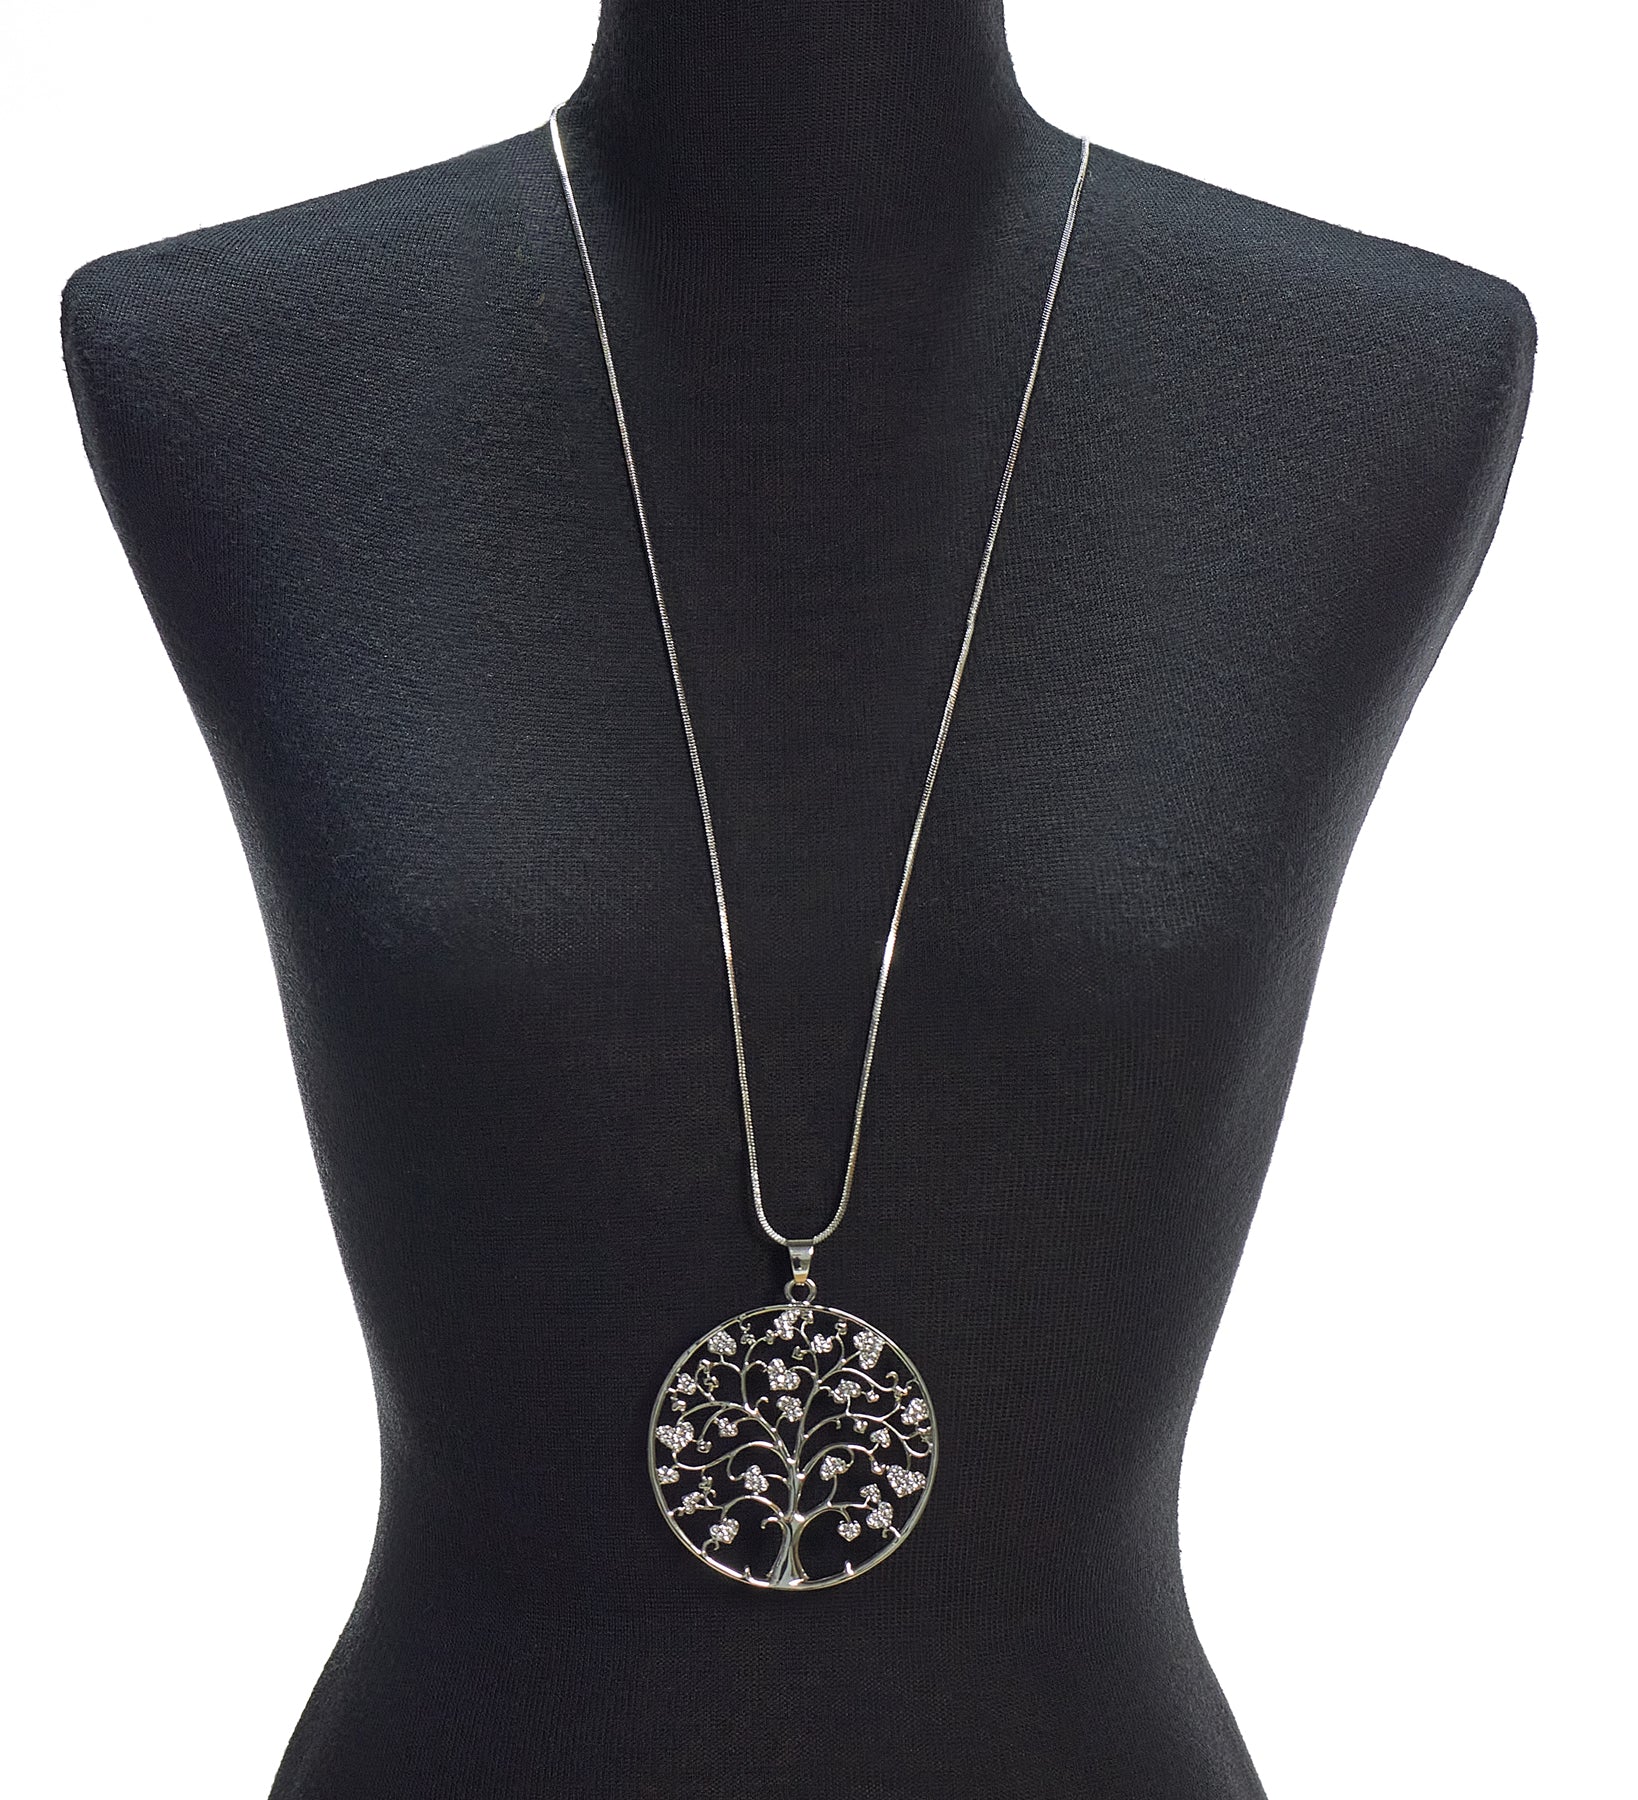 Tree of life necklace-Buy Tree Of life Necklaces Online-Les Nana Tree Of Life Necklace